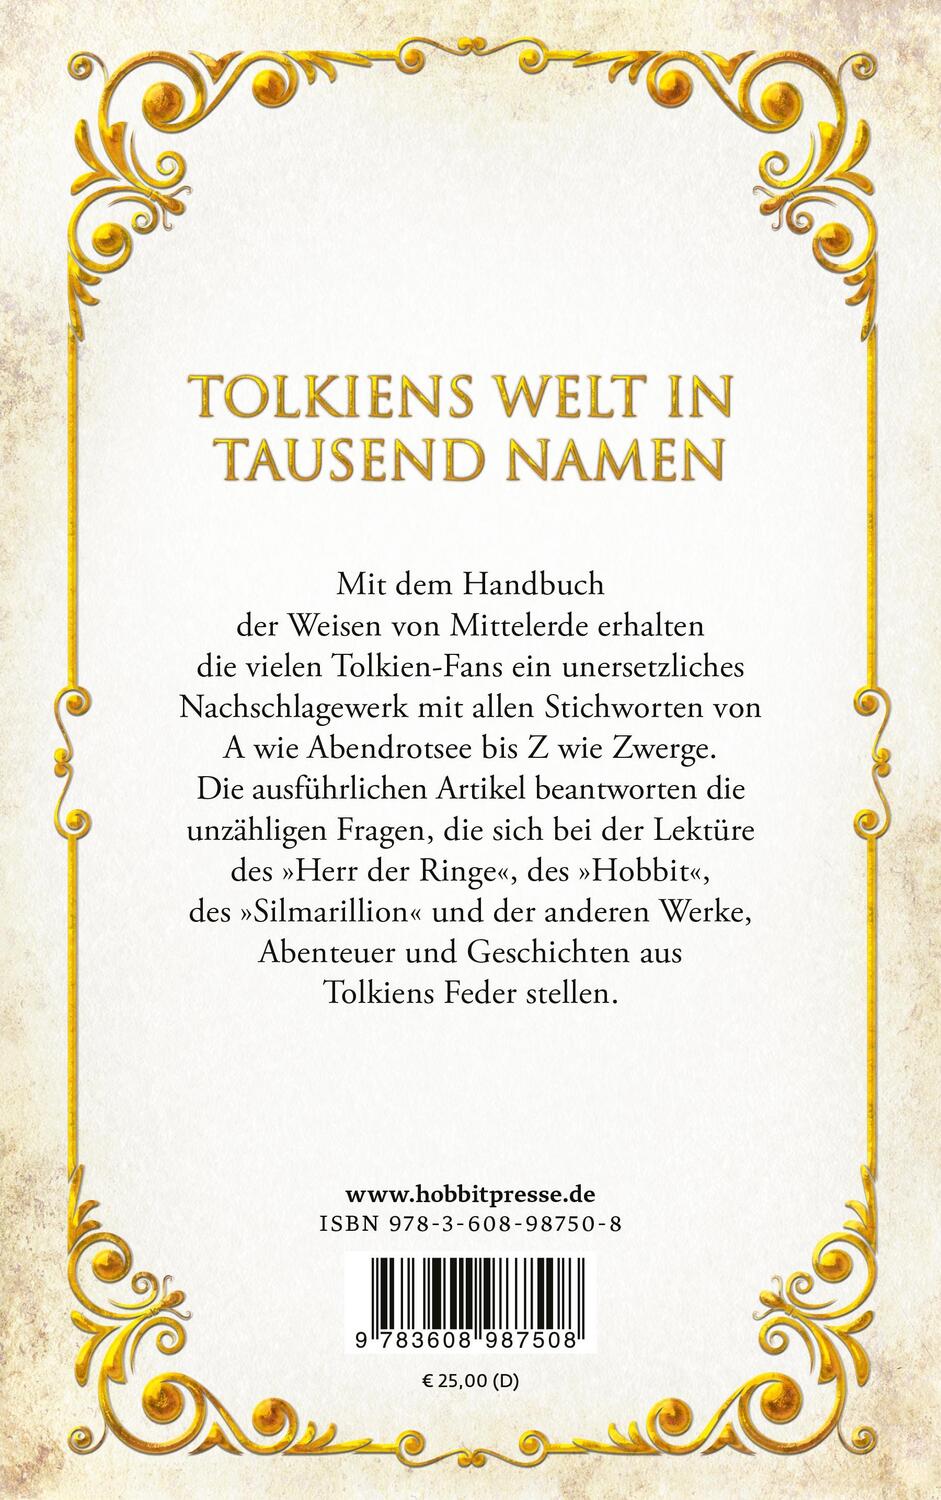 Rückseite: 9783608987508 | Handbuch der Weisen von Mittelerde | Die Tolkien-Enzyklopädie | Krege